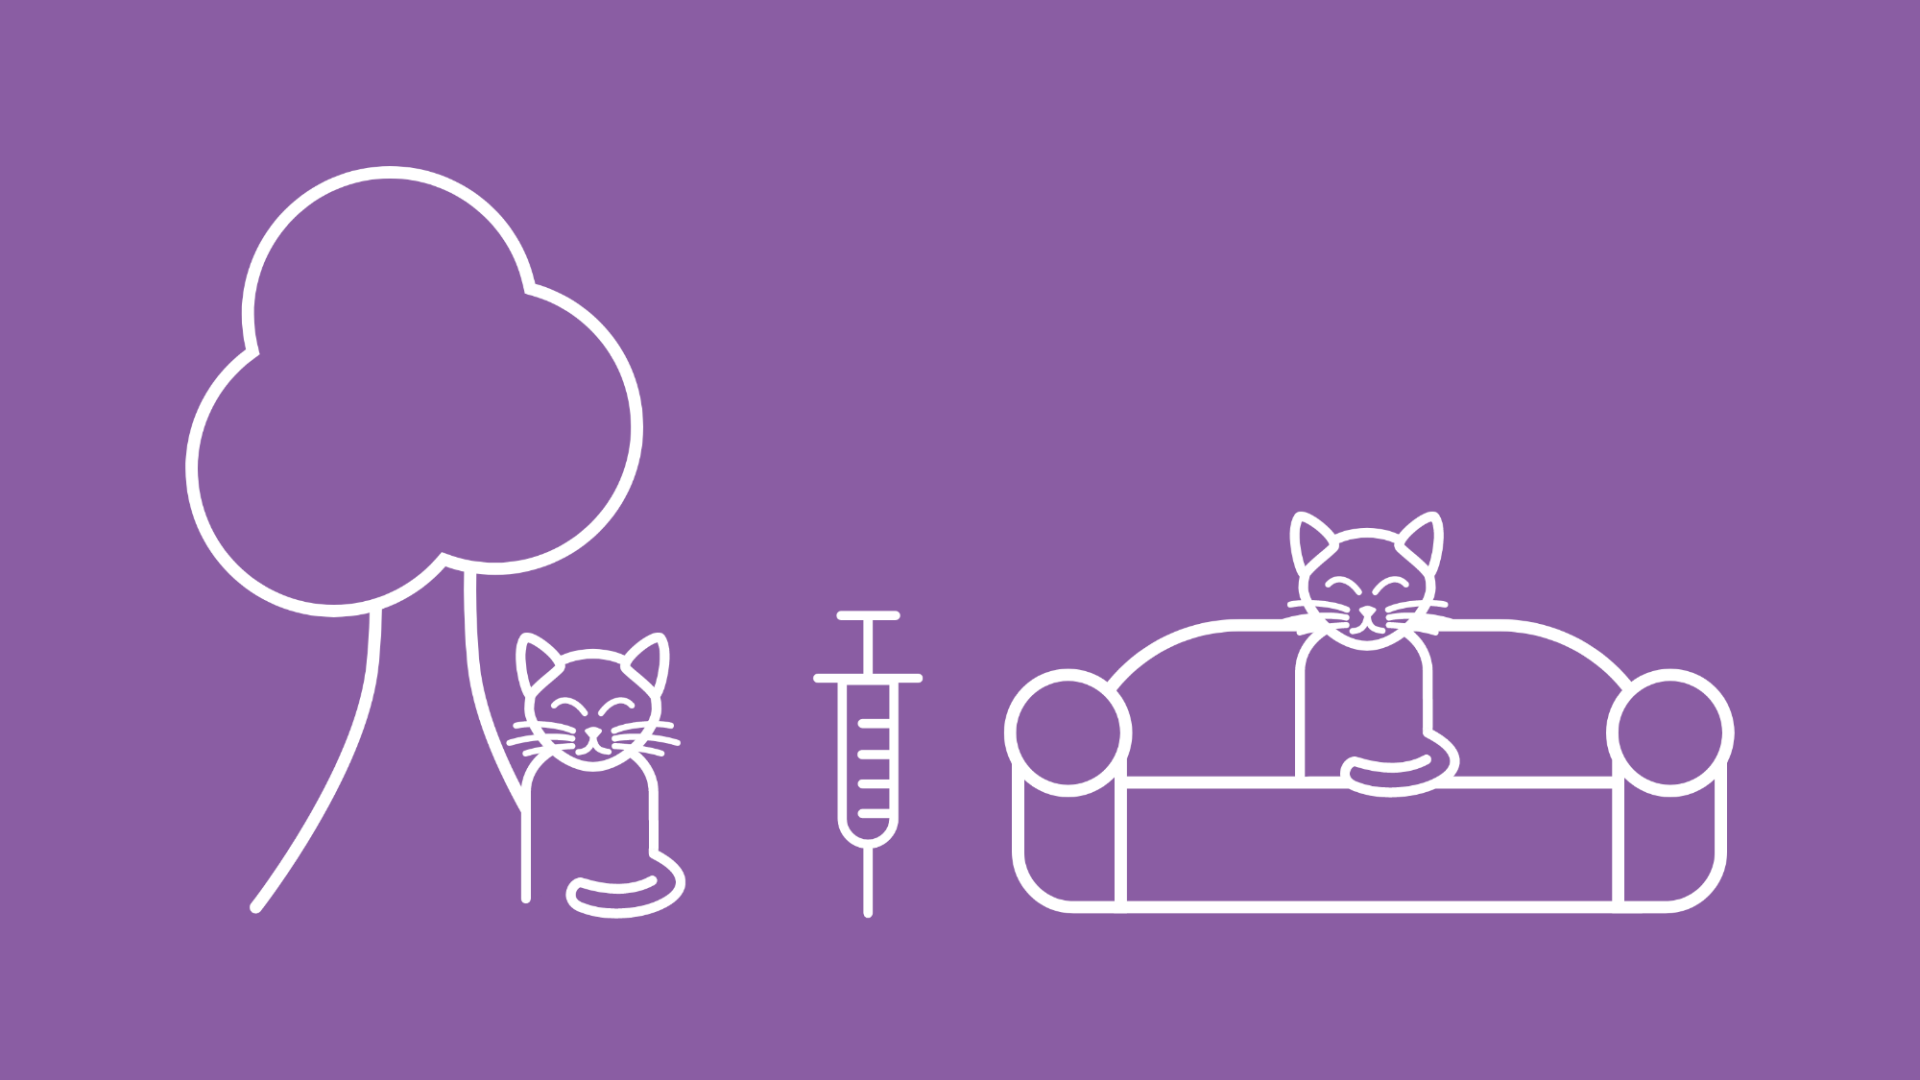 Zwischen einer Freigänger Katze neben einem Baum und einer Hauskatze auf einem Sofa ist eine Spritze abgebildet, die für den Impfschutz steht